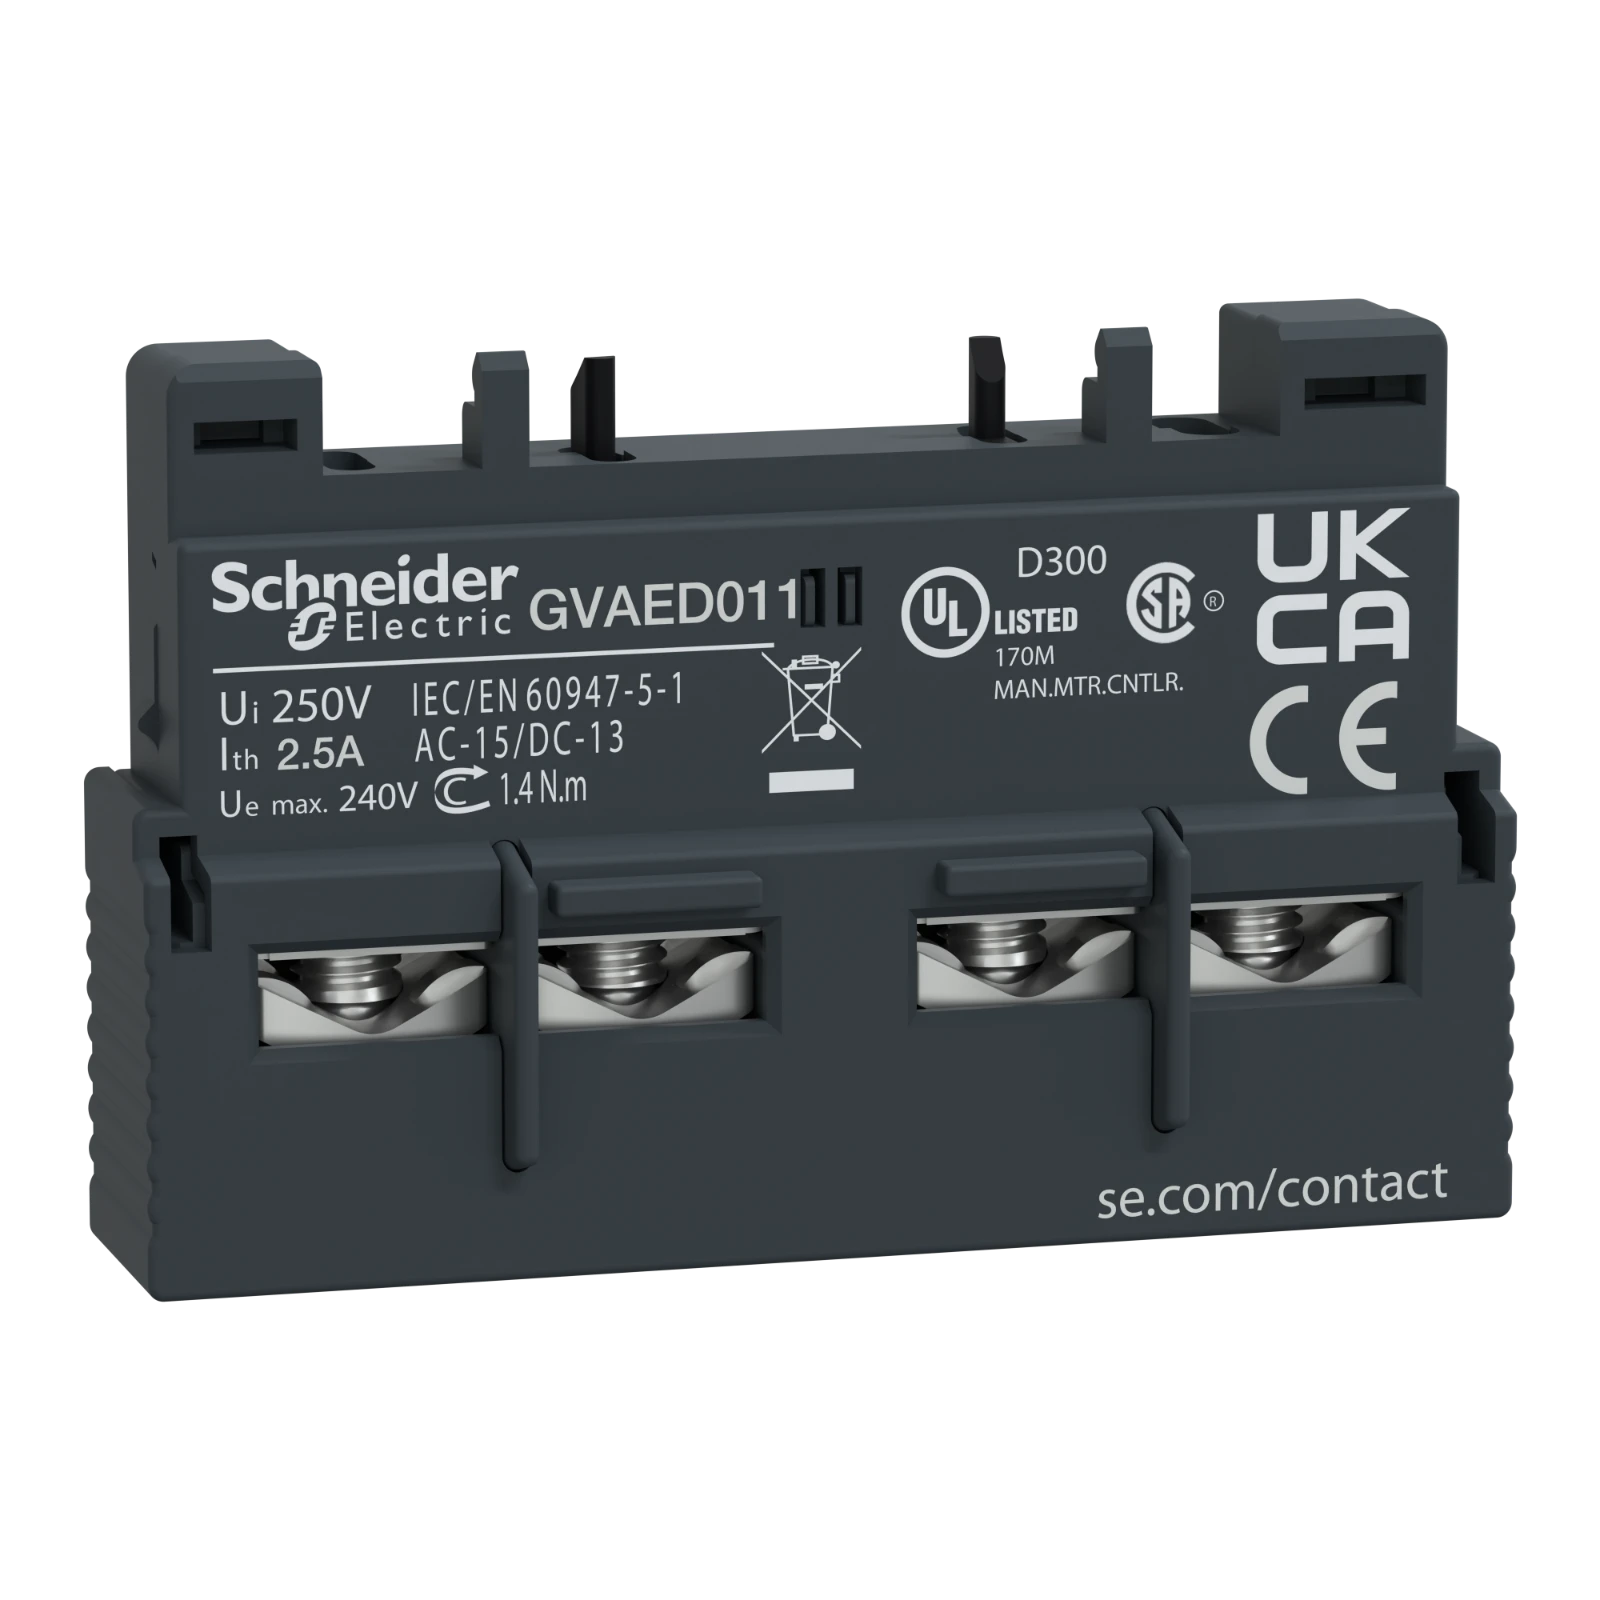 2335321 - Schneider Electric GVAED011